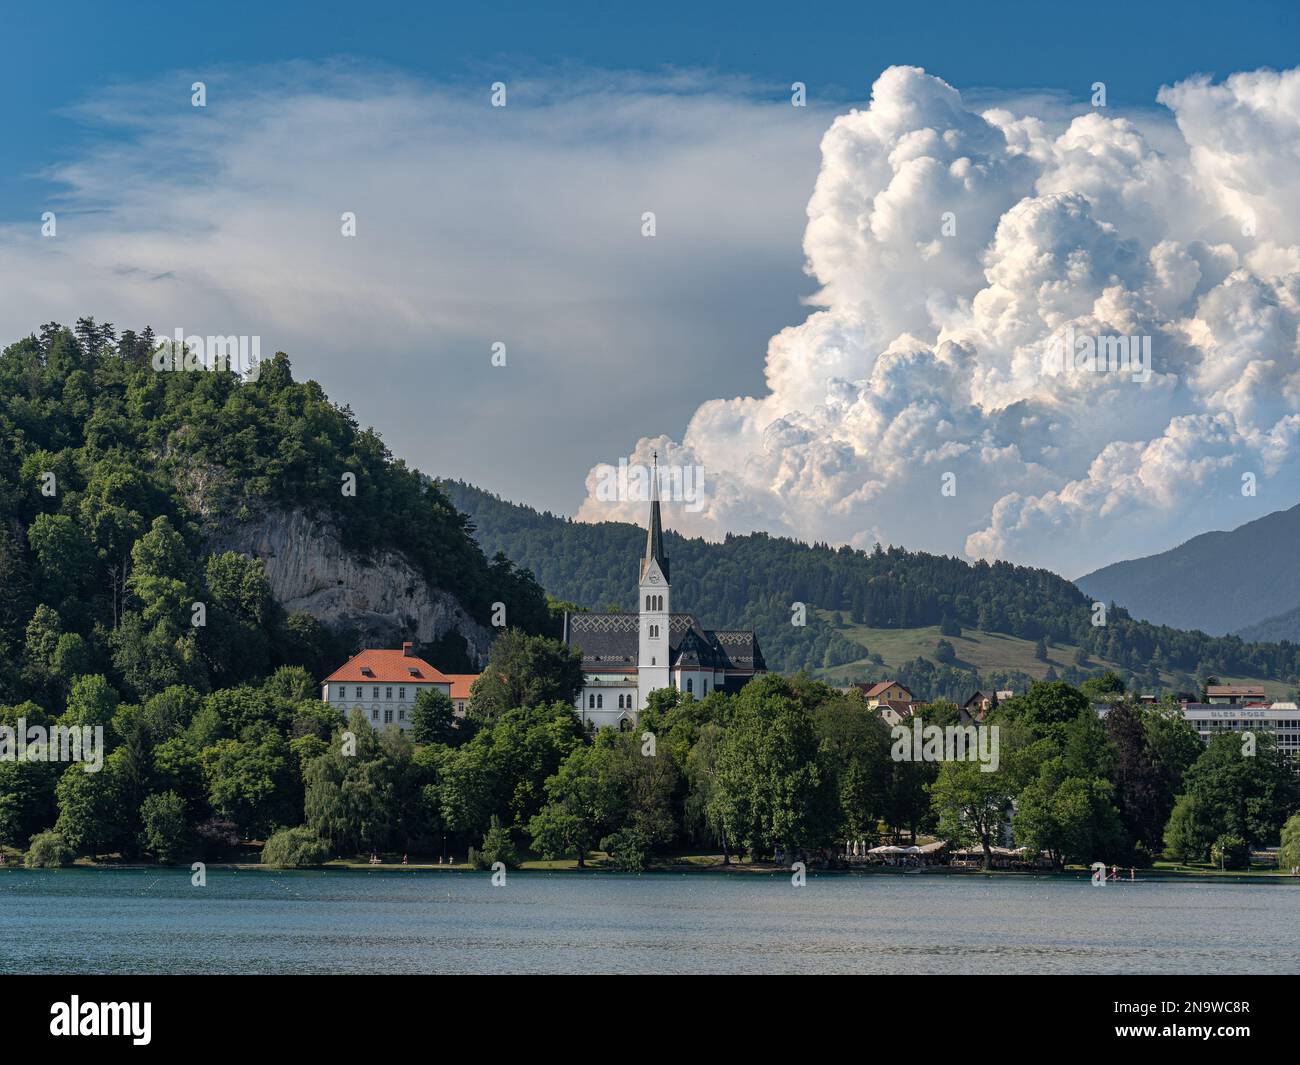 Bleder See mit einer Kirche Zupnijska cerkev svetega Martina - Kirche St. Martina, Bled, mit einem Hintergrund von weißen Wolken am Sommertag Stockfoto